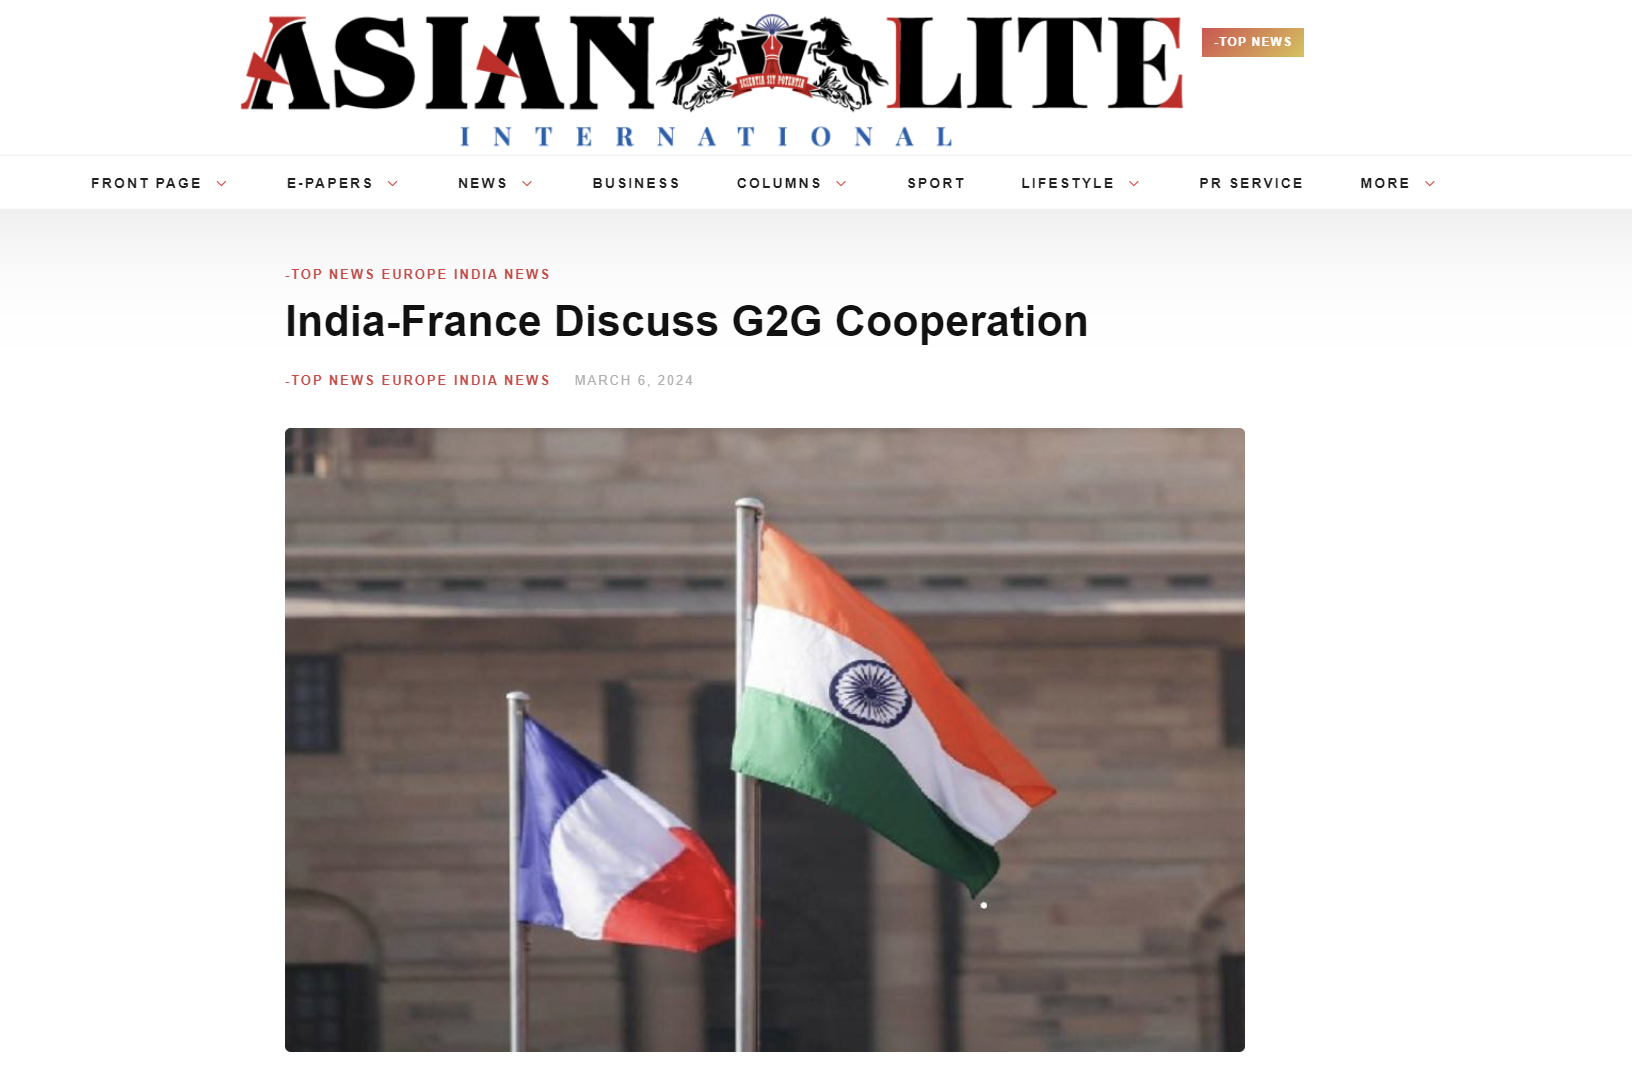 Δυναμική ενίσχυση της στρατηγικής σχέσης Ινδίας και Γαλλίας